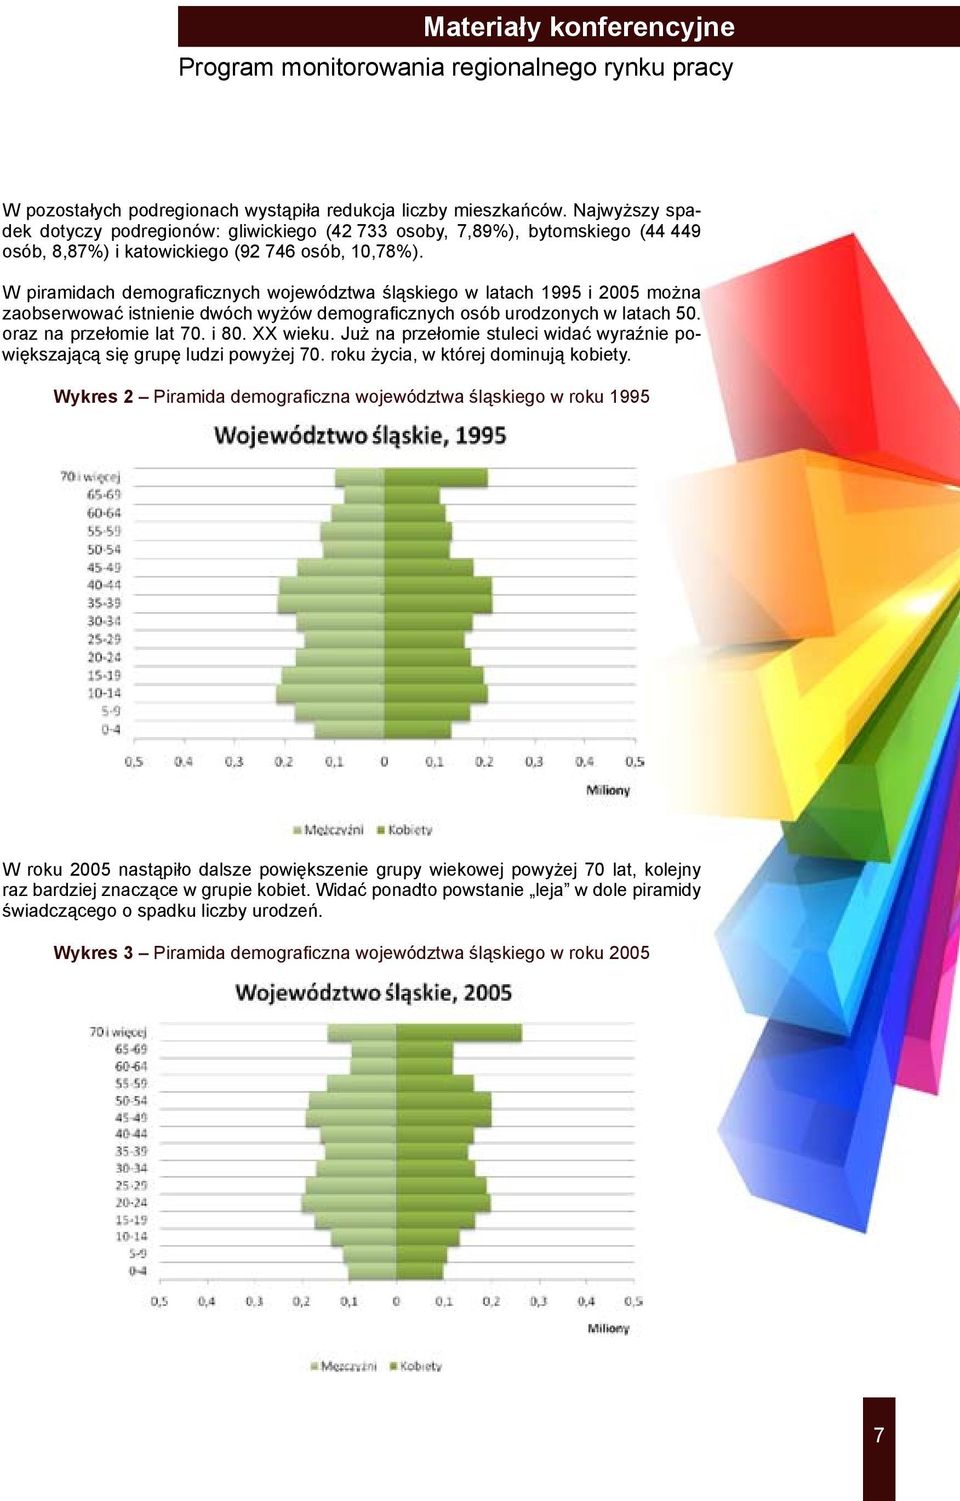 W piramidach demograficznych województwa śląskiego w latach 1995 i 2005 można zaobserwować istnienie dwóch wyżów demograficznych osób urodzonych w latach 50. oraz na przełomie lat 70. i 80. XX wieku.